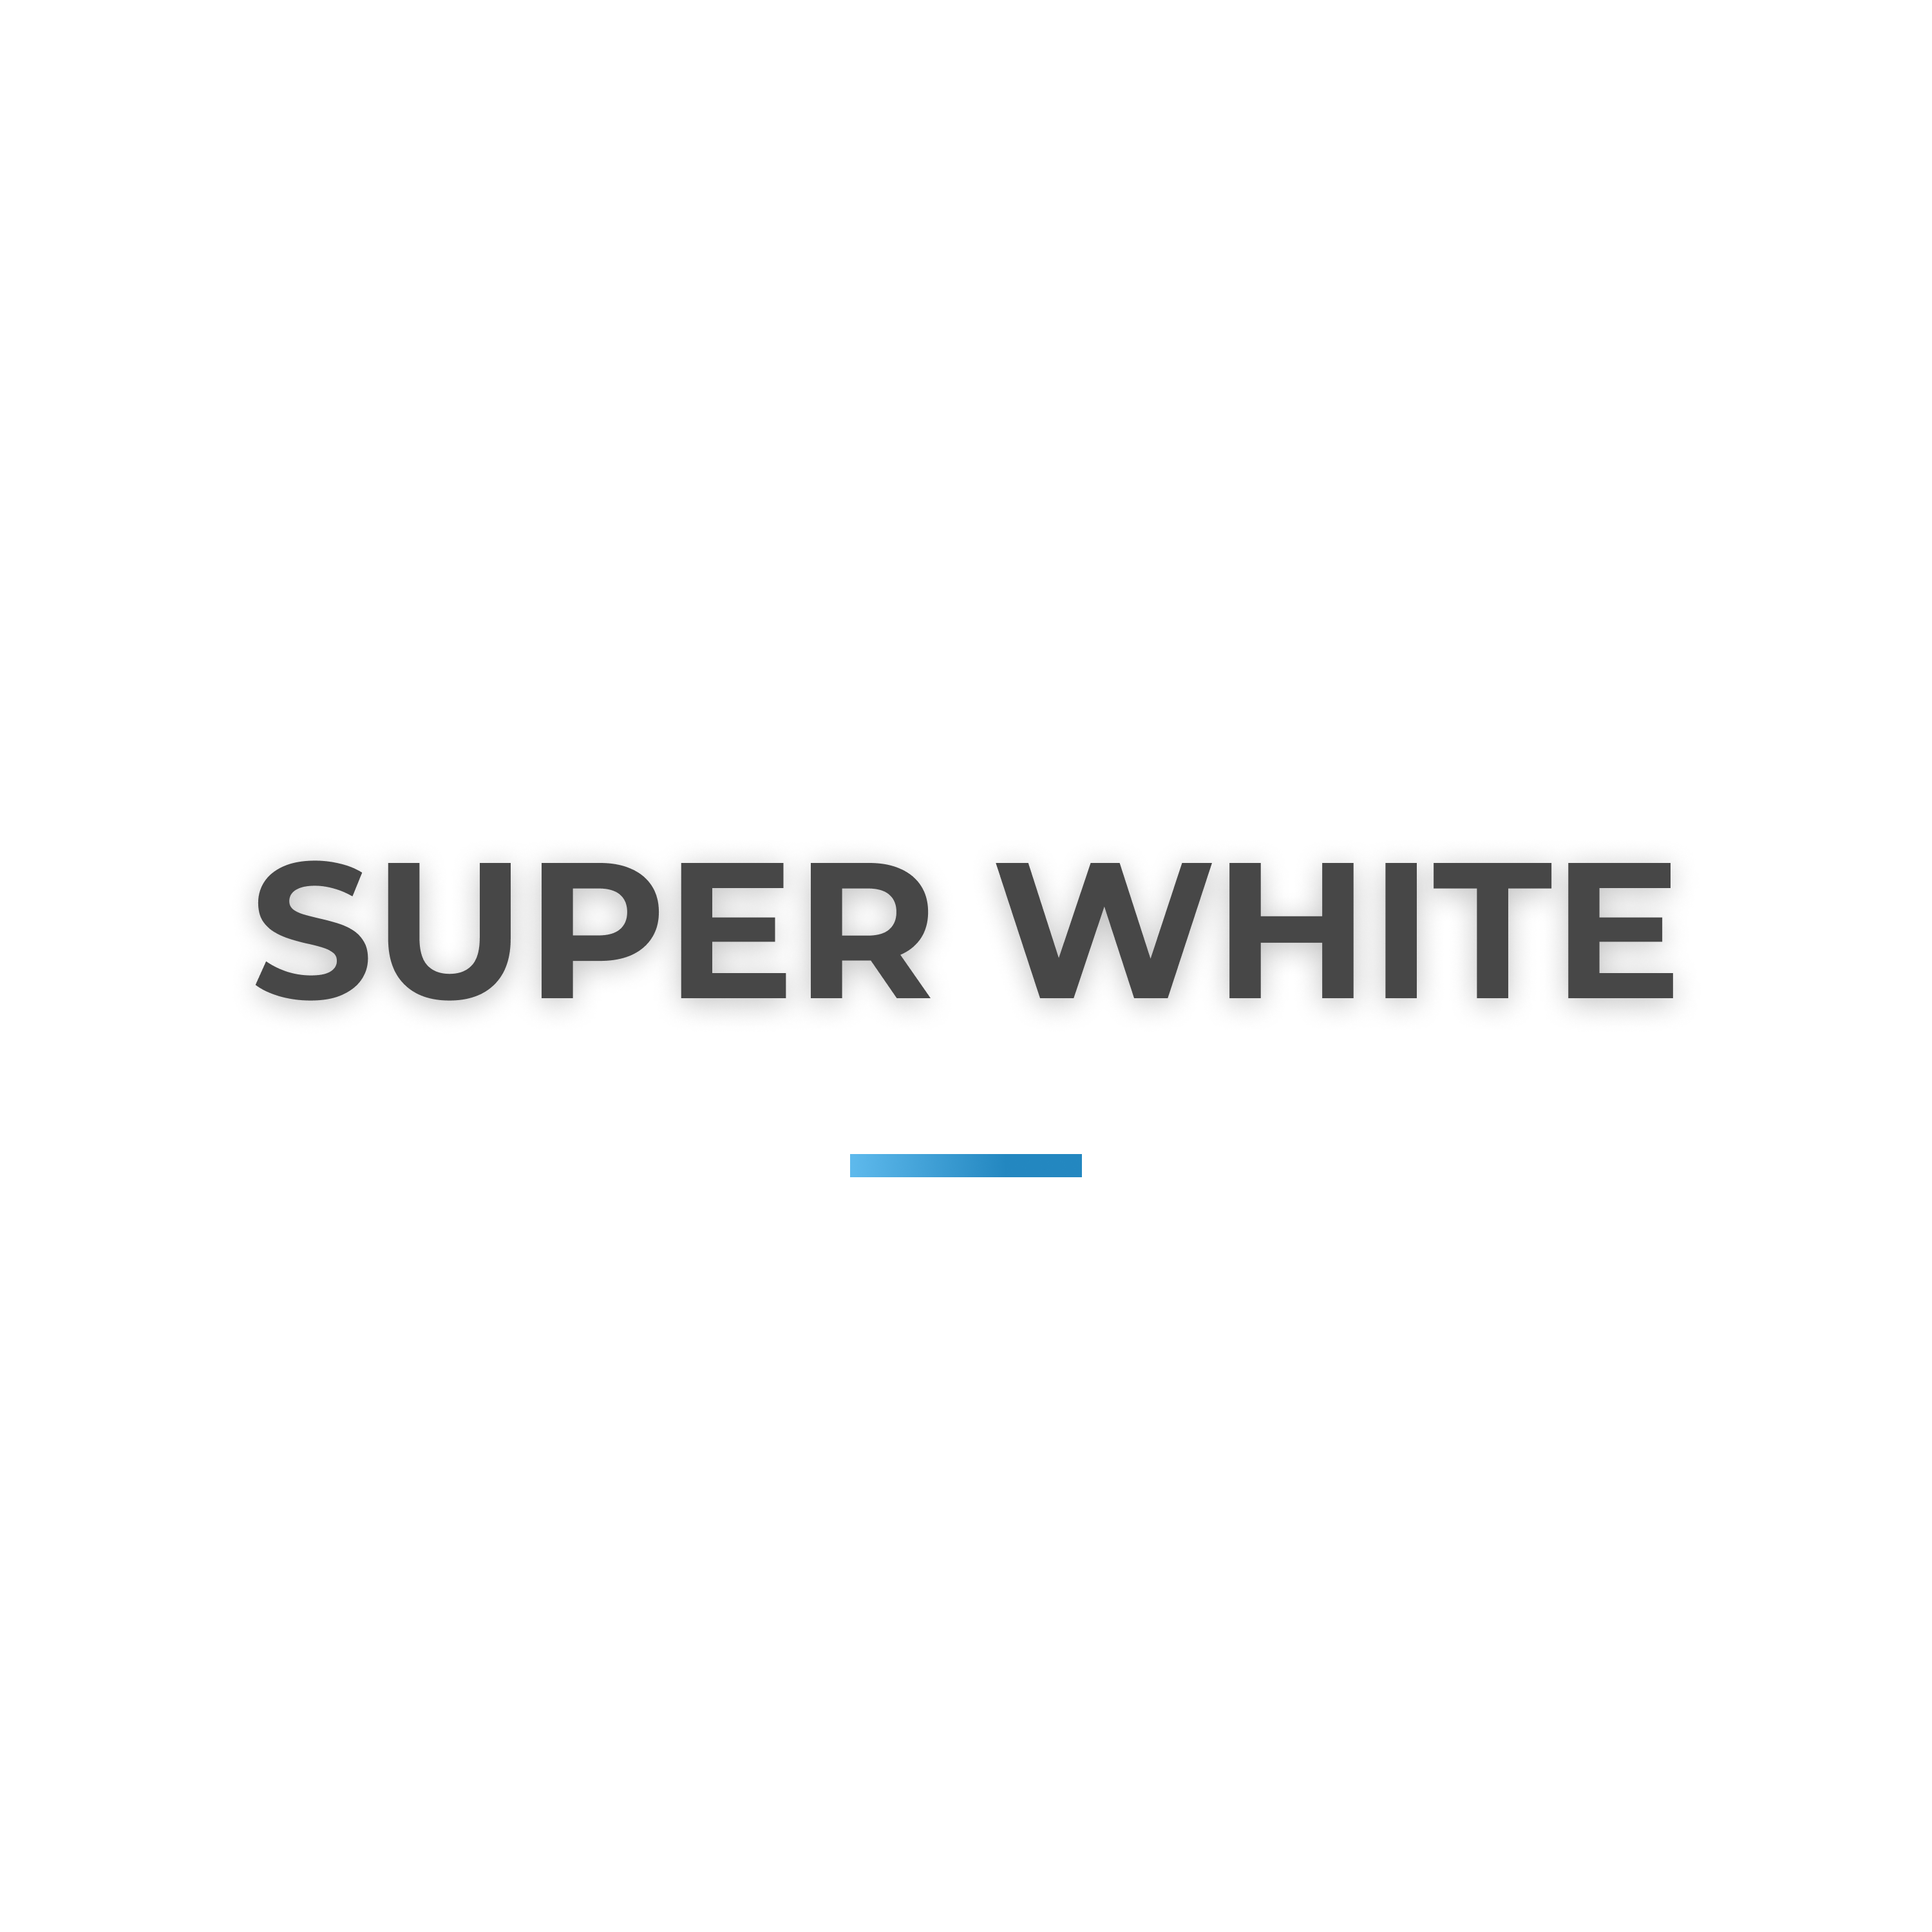 Super white collection